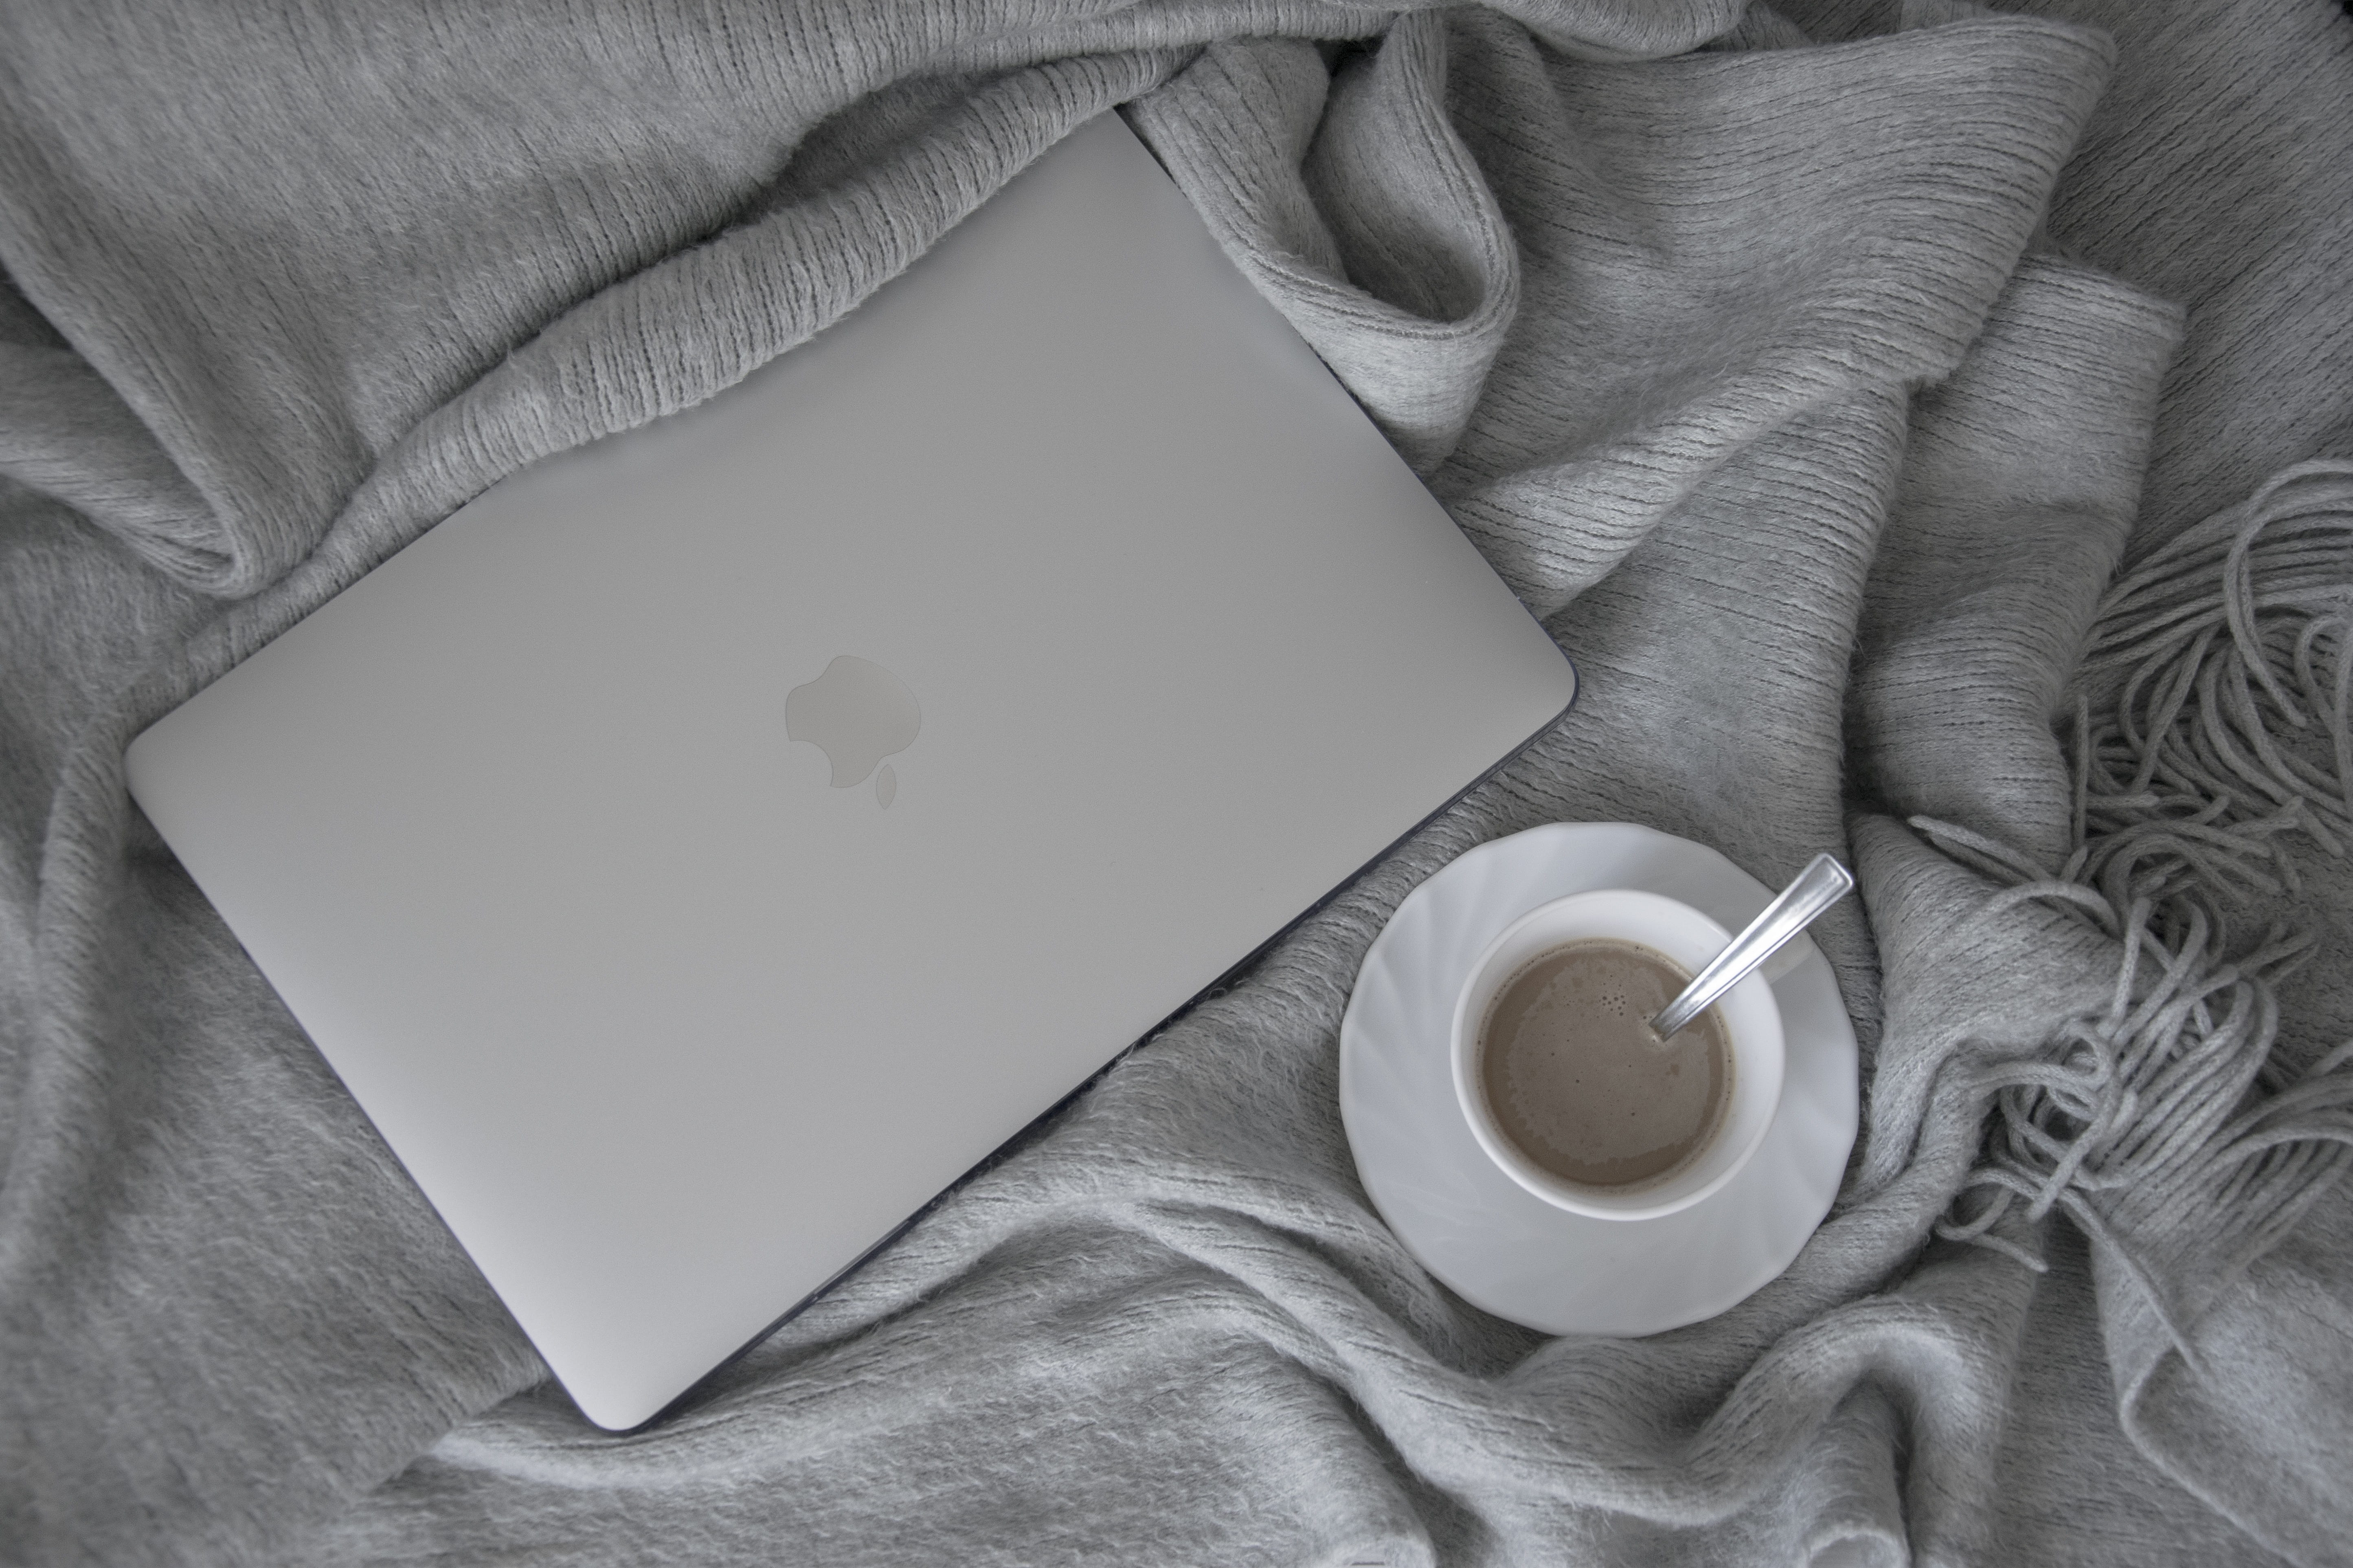 apple, macbook, laptop, minimum, aesthetic, coffee, drink, cup